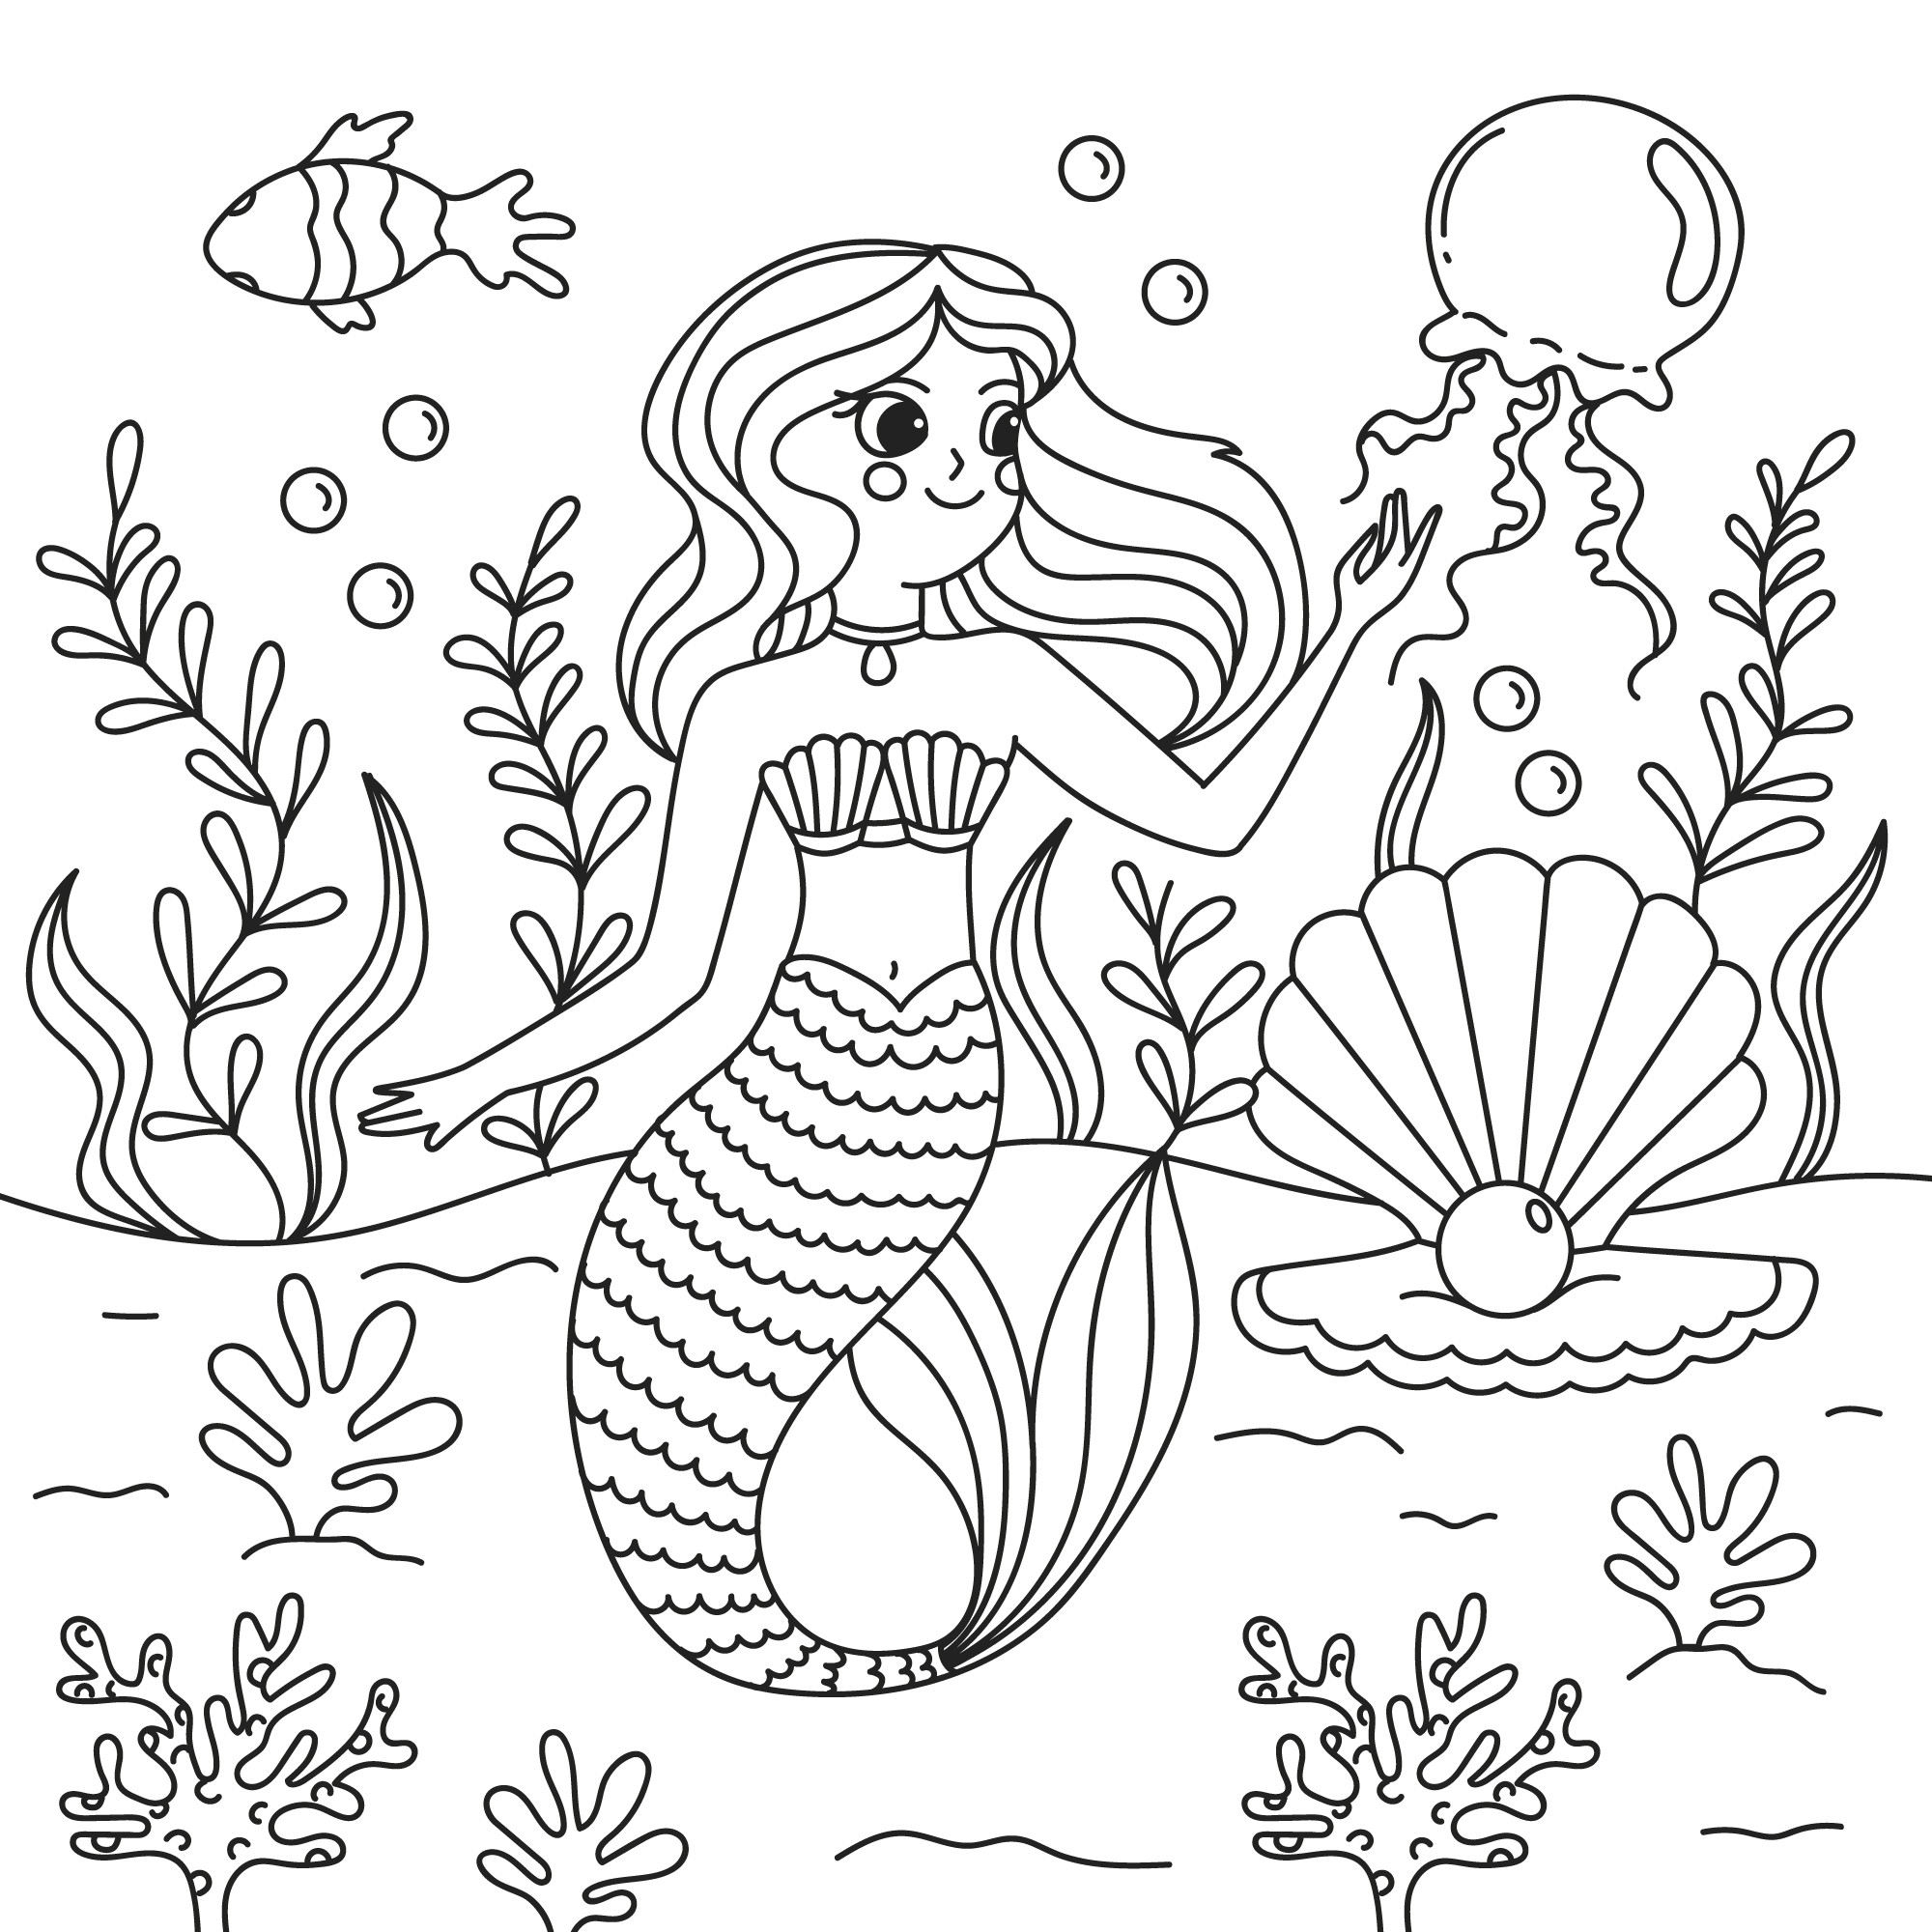 Раскраска для детей: русалка с медузой на фоне большой ракушки с жемчугом